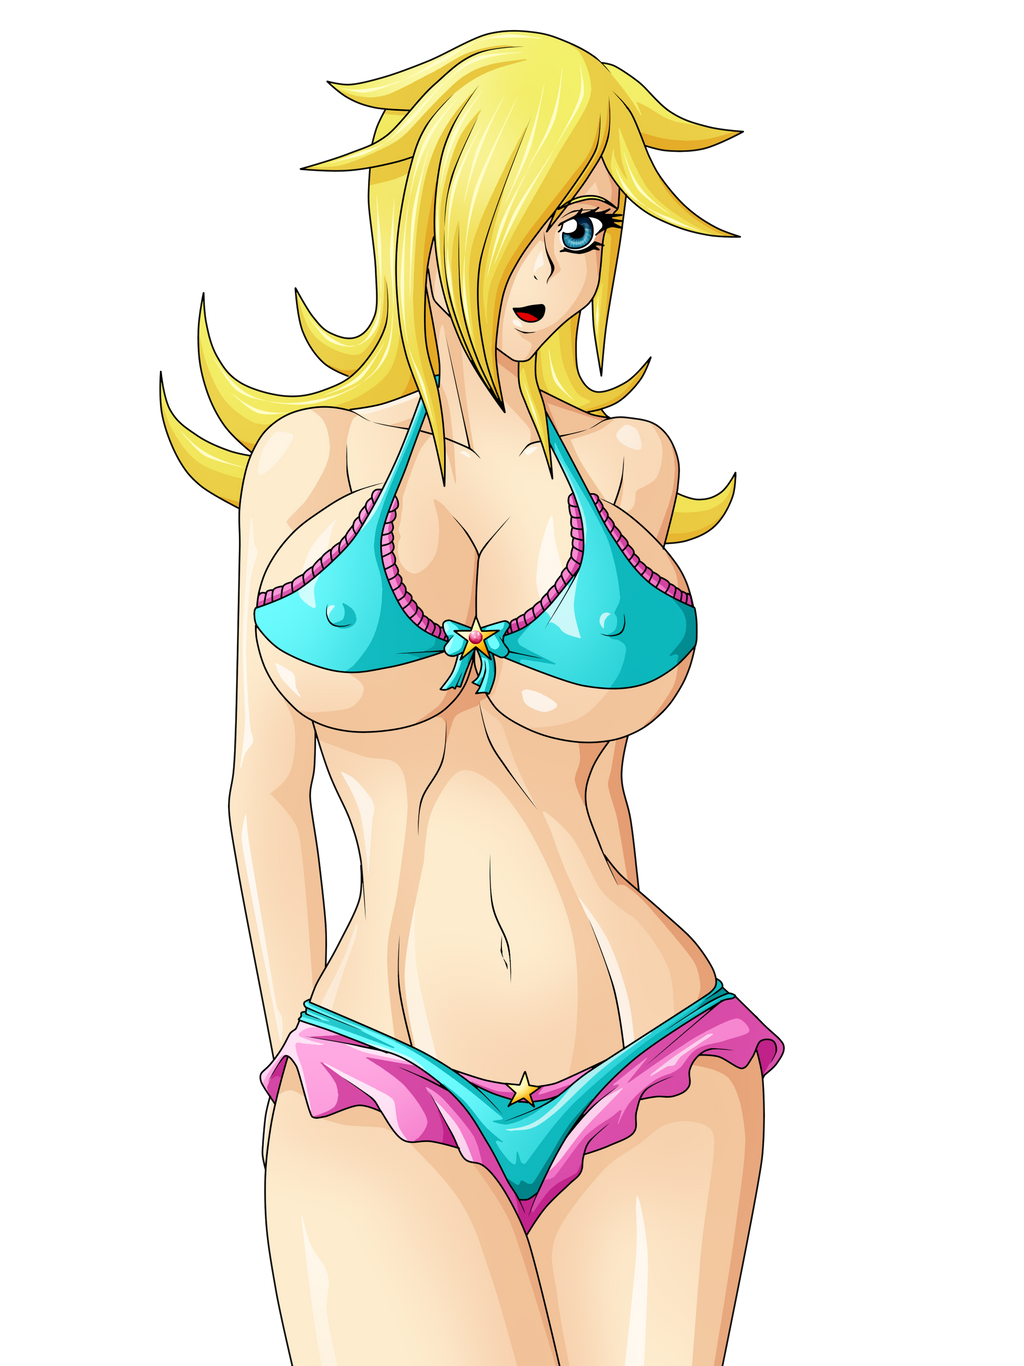 Rosalina in bikini commission.